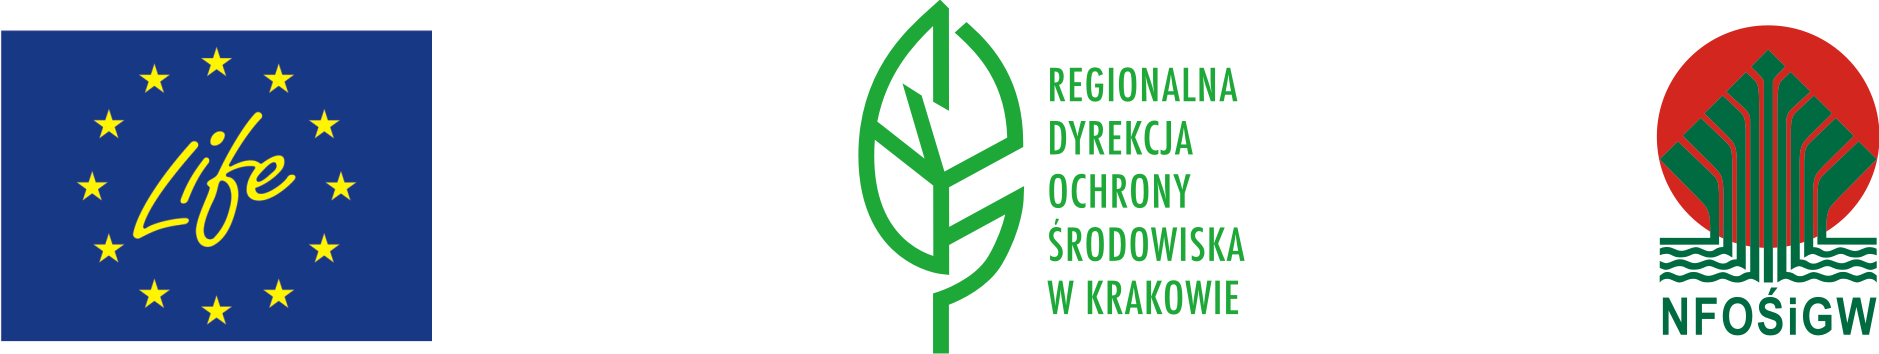 Pasek zawierający kolejno 3 loga: Logo LIFE+, Logo Regionalnej Dyrekcji Ochrony Środowiska w Krakowie, Logo NFOŚiGW